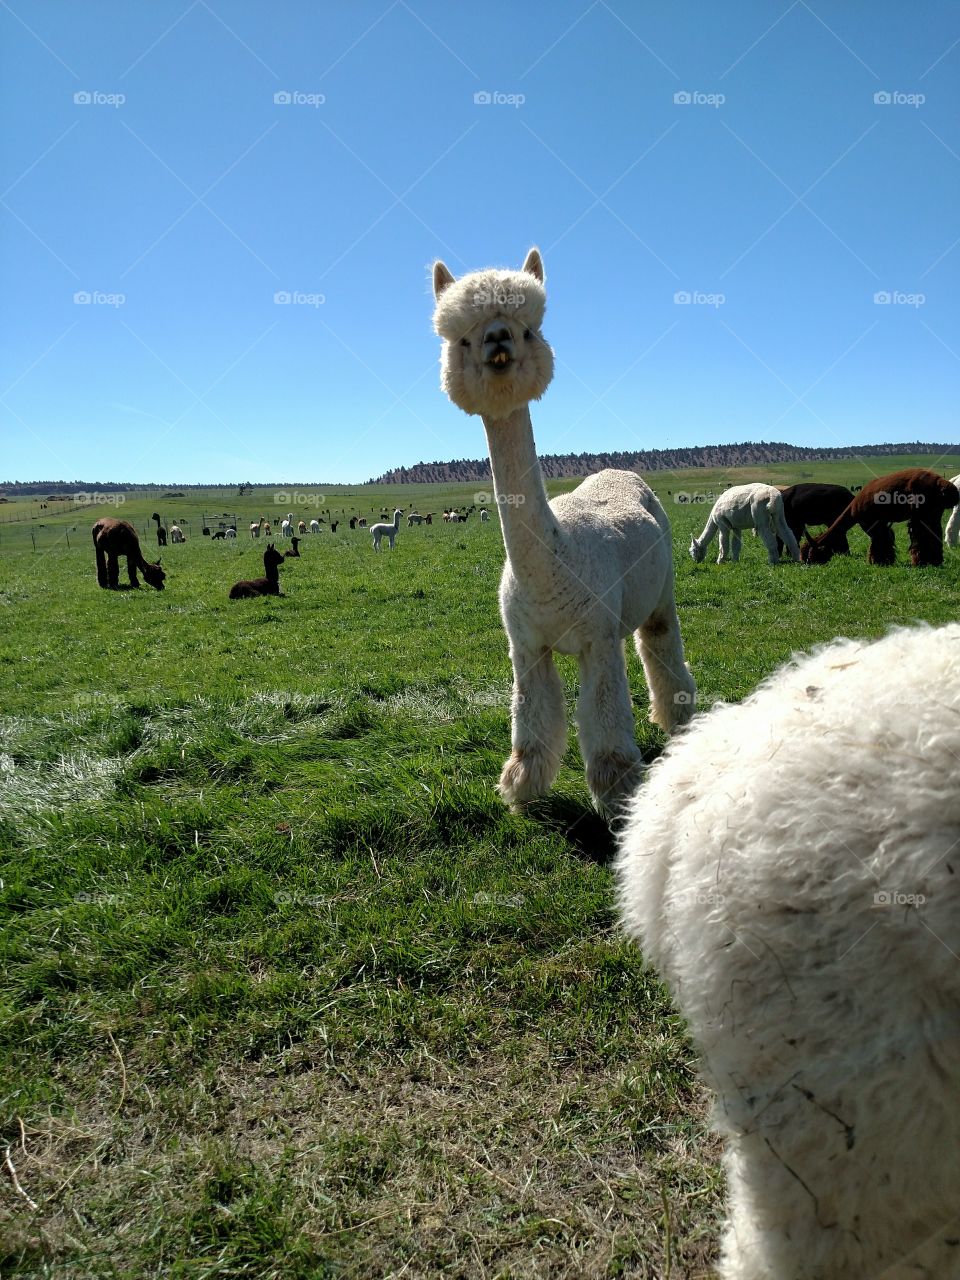 Hello from the Alpaca Farm